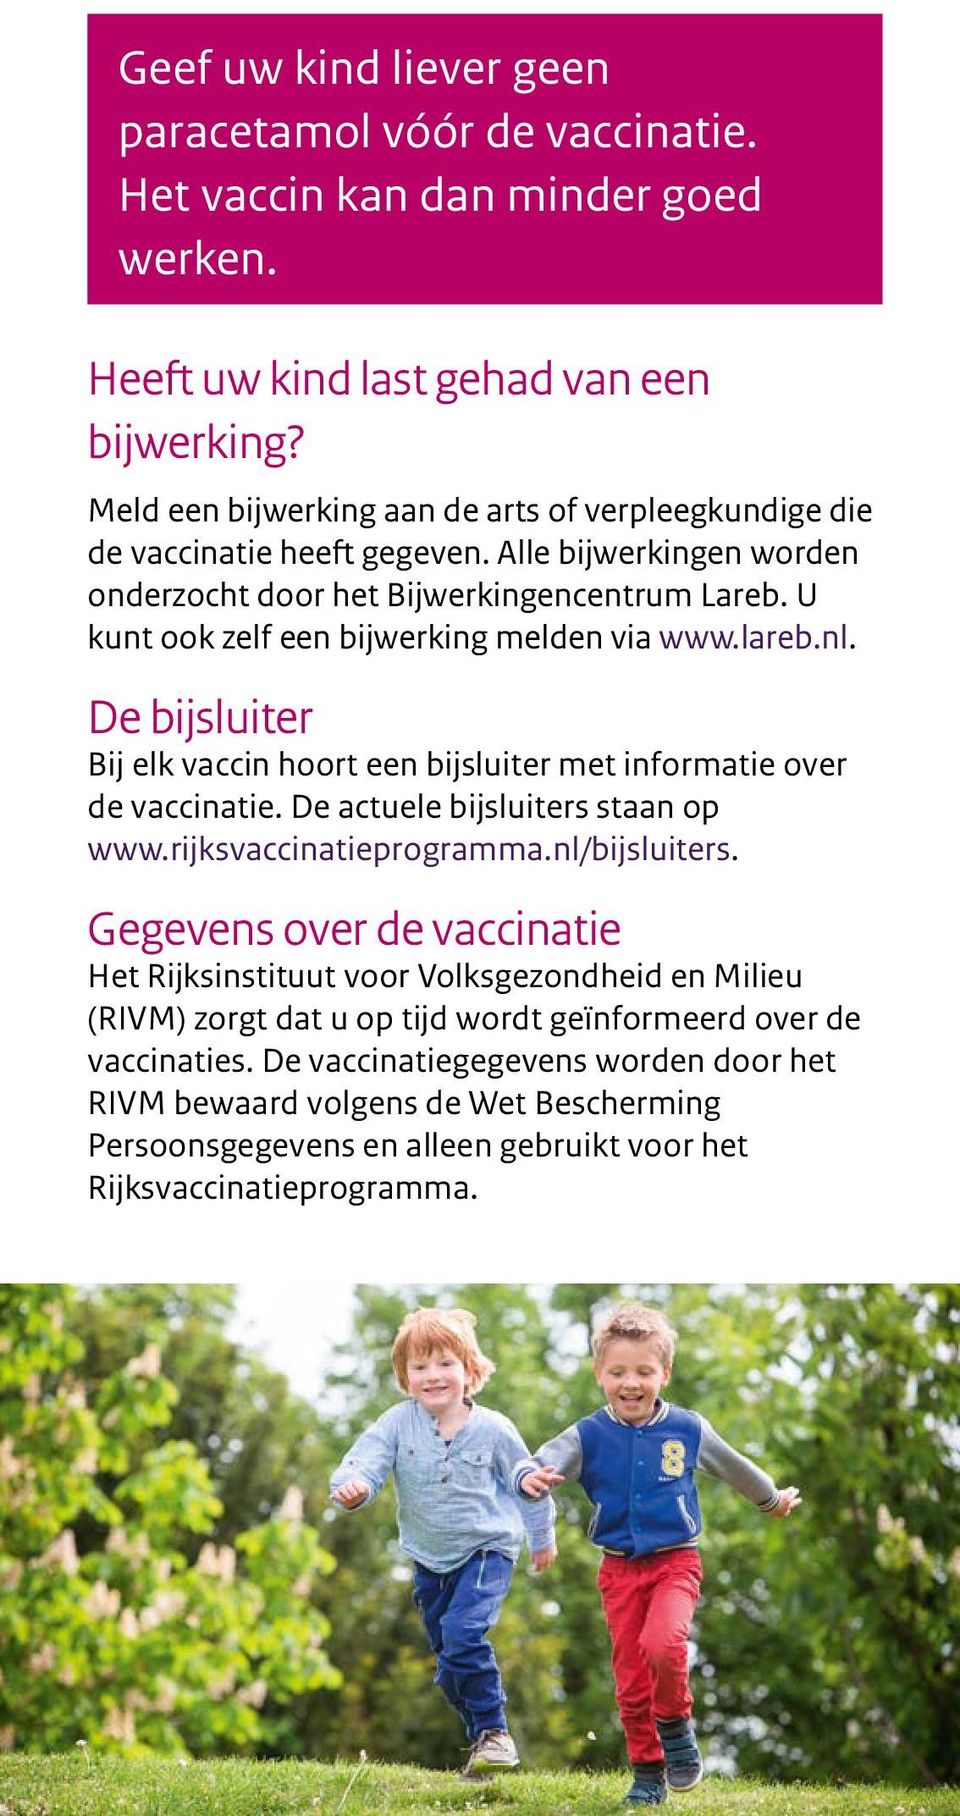 U kunt ook zelf een bijwerking melden via www.lareb.nl. De bijsluiter Bij elk vaccin hoort een bijsluiter met informatie over de vaccinatie. De actuele bijsluiters staan op www.